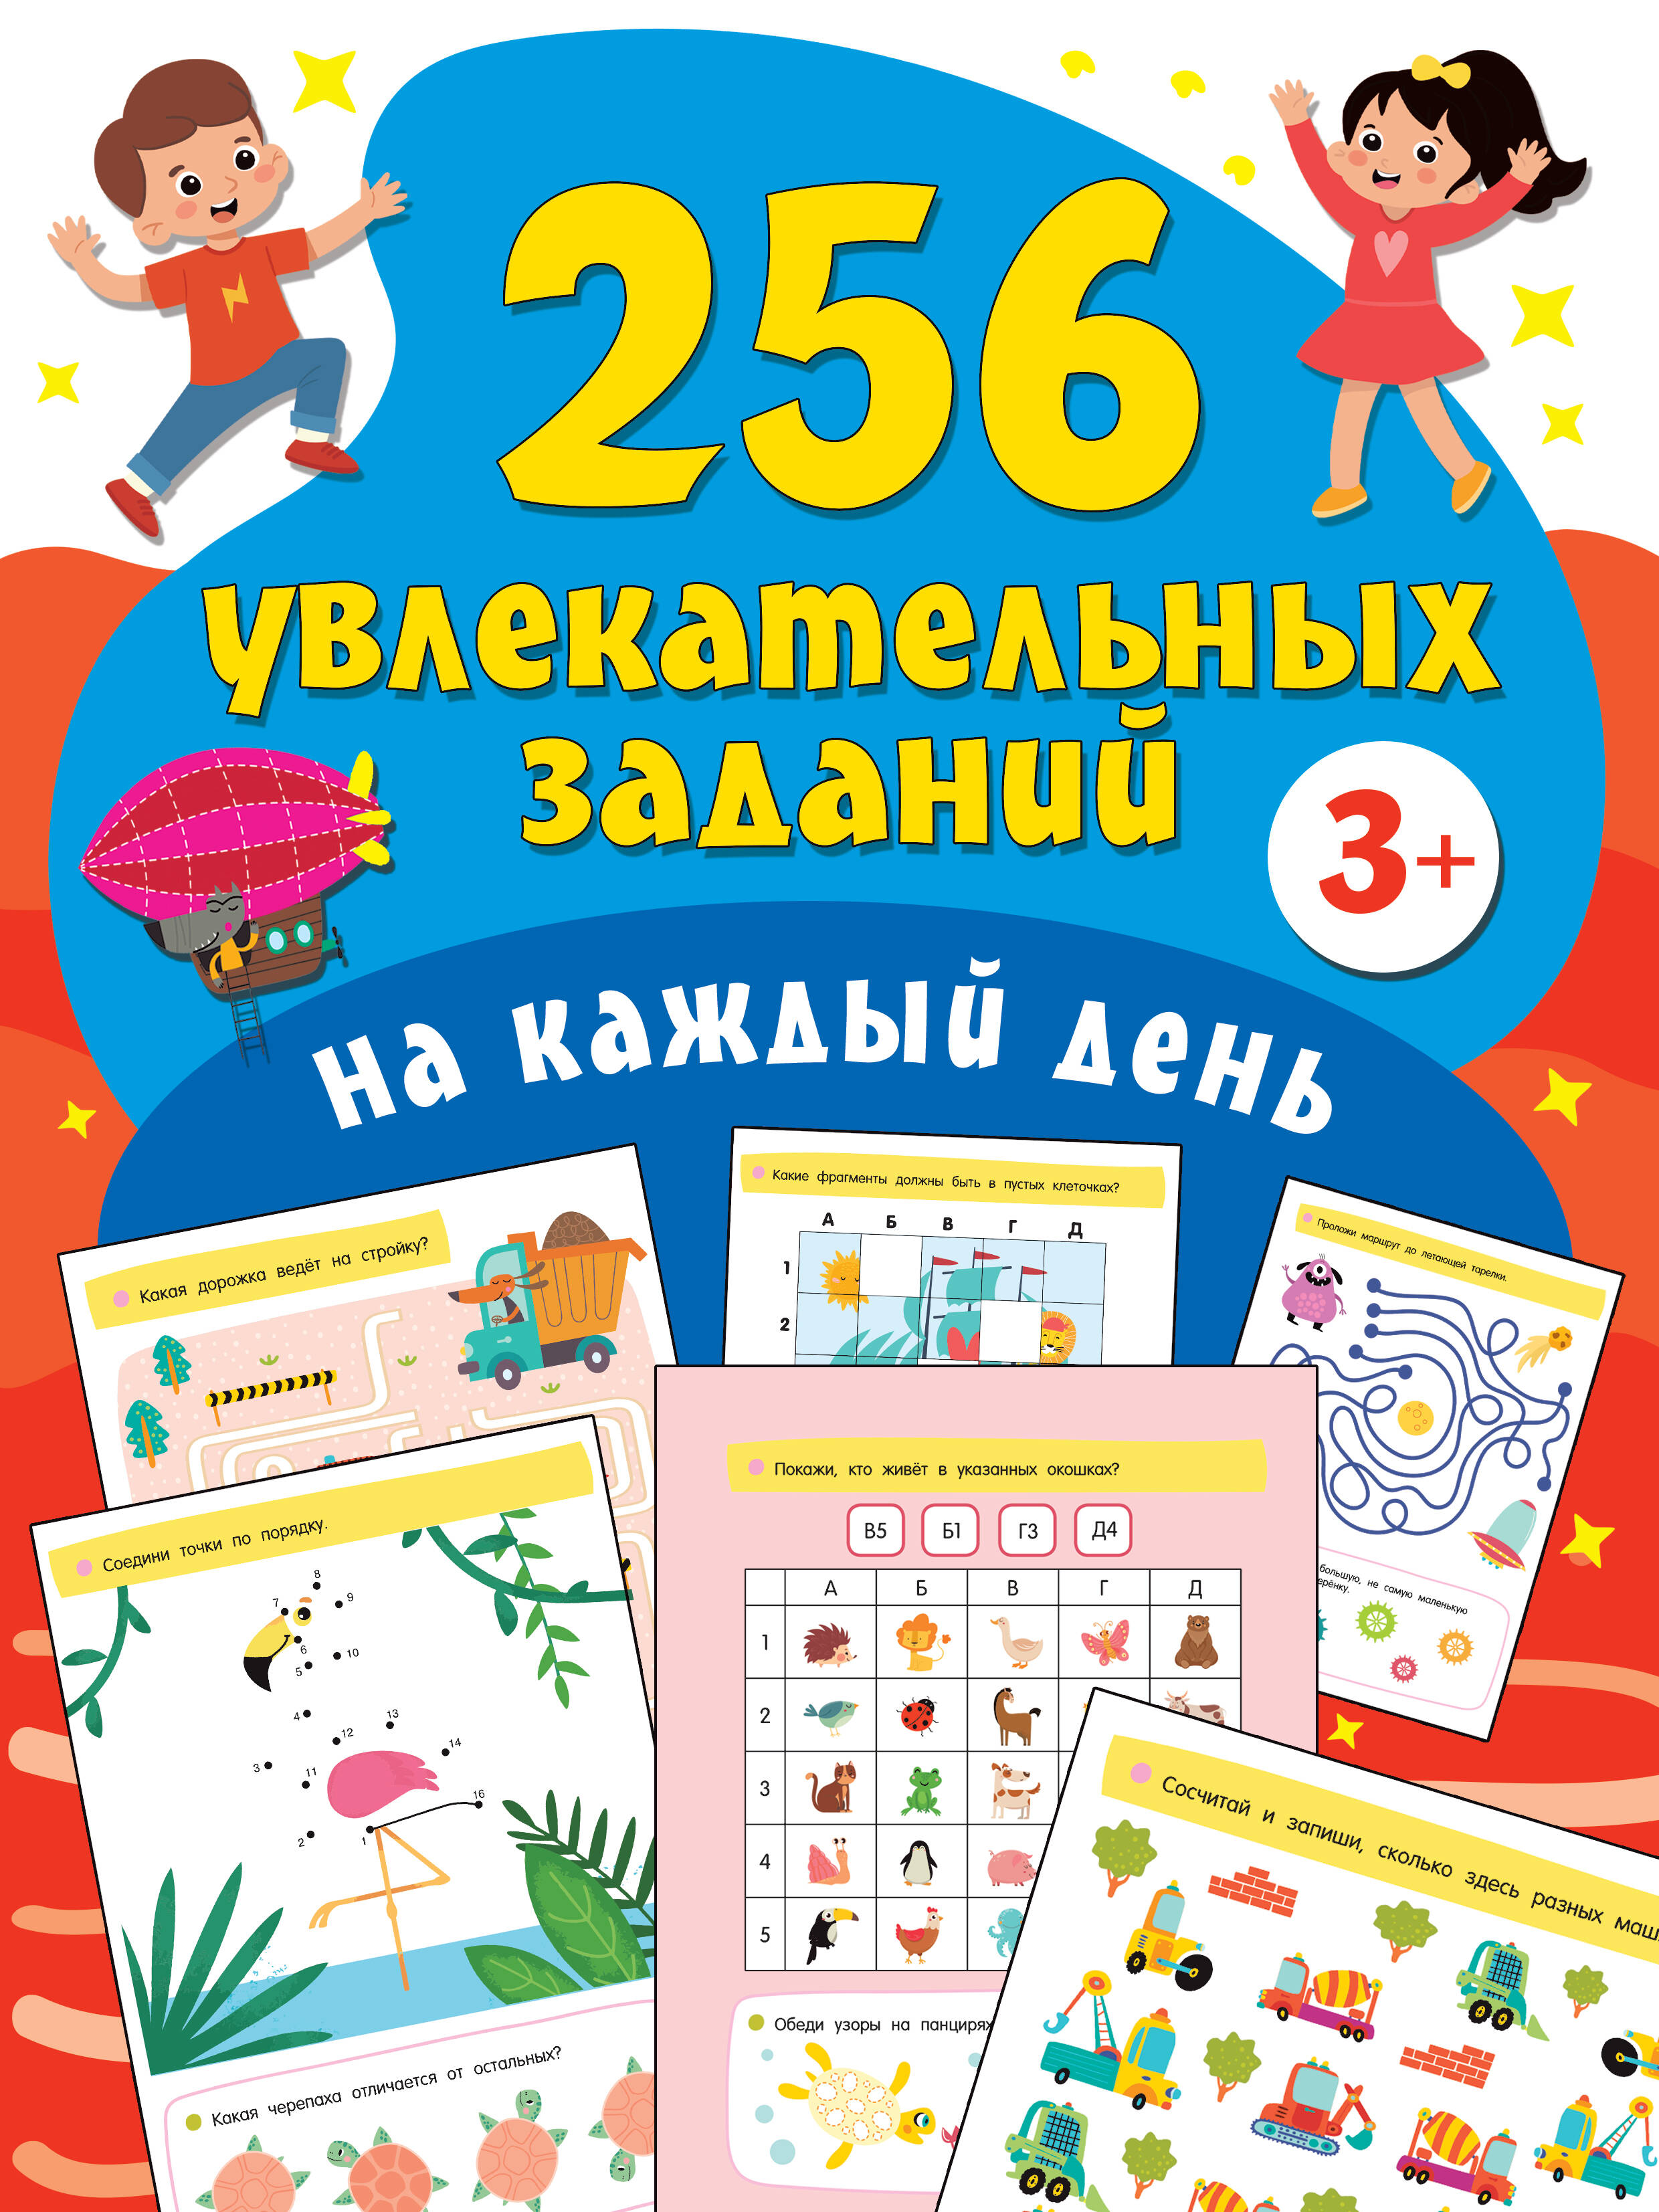 1000 игр и заданий для дошколят Дмитриева Валентина Геннадьевна 256 увлекательных заданий на каждый день